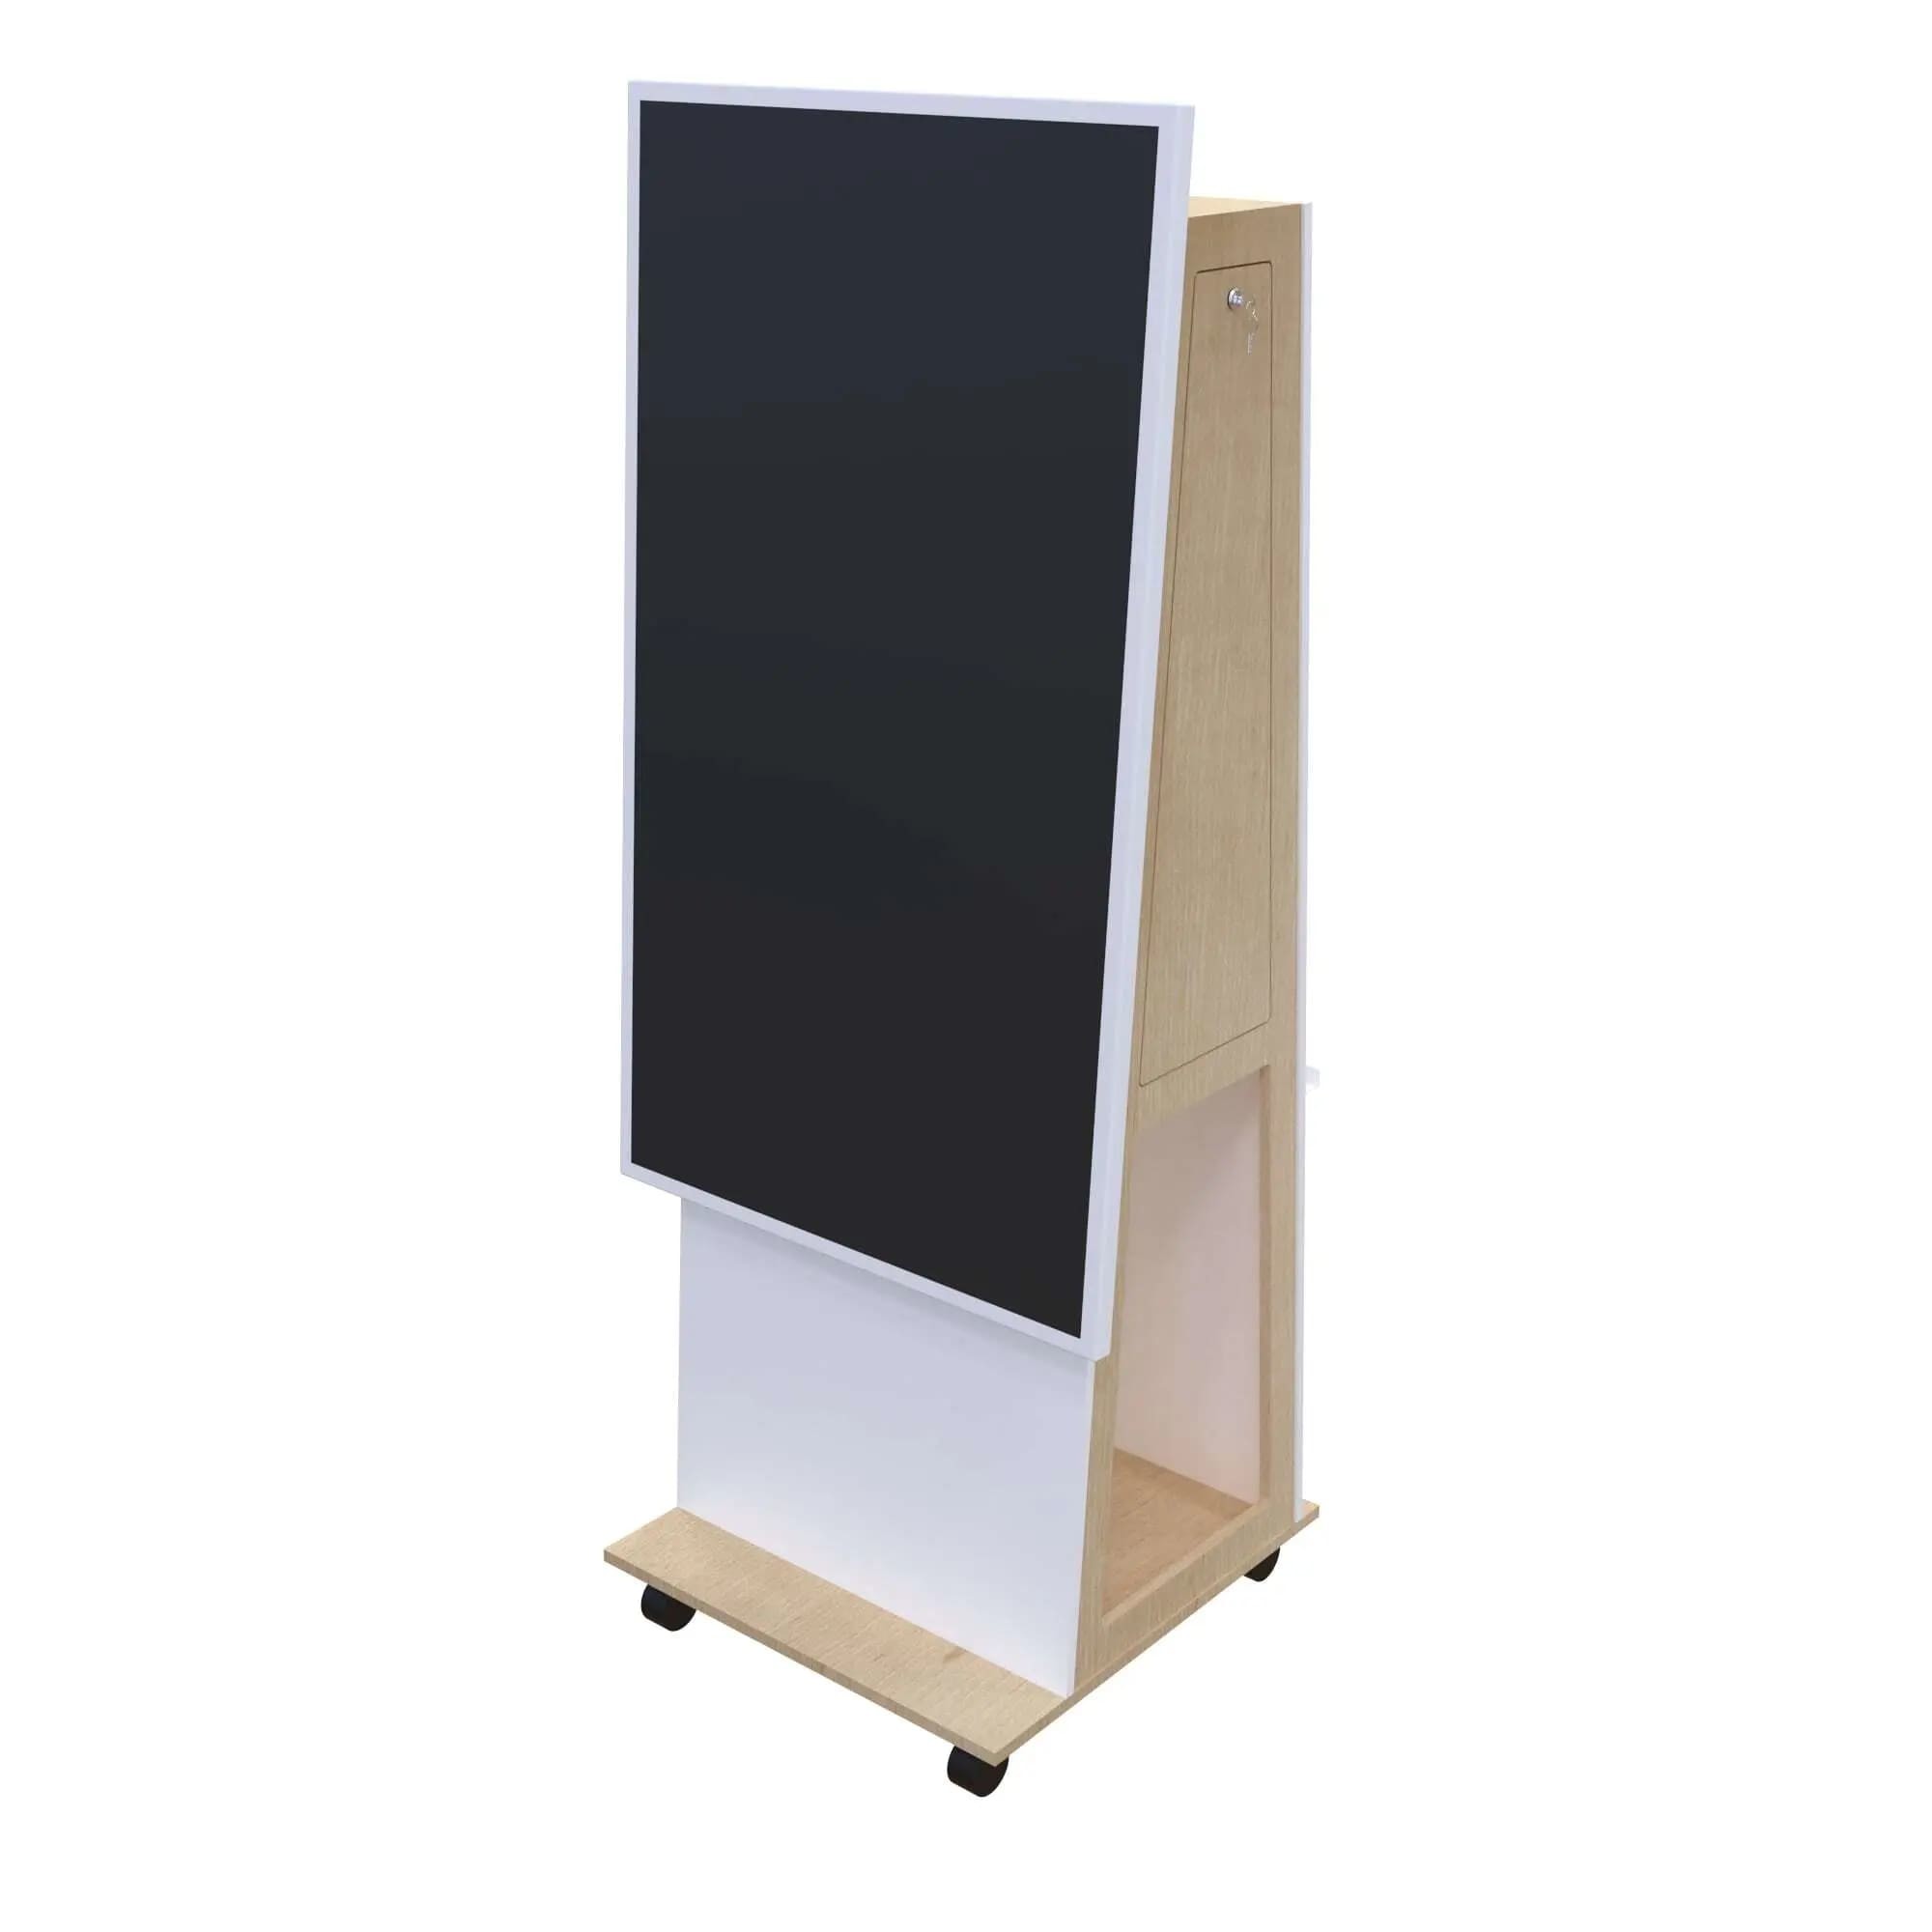 Monitor Standfuß Thola mit einem Whiteboard-Display (Hochformat) als Digitales Whiteboard und Digitale Tafel. Besonderheiten: Abschließbare Serviceklappe, VESA-Drehgelenk zur Displayrotation (90°), Integrierte Rollen.